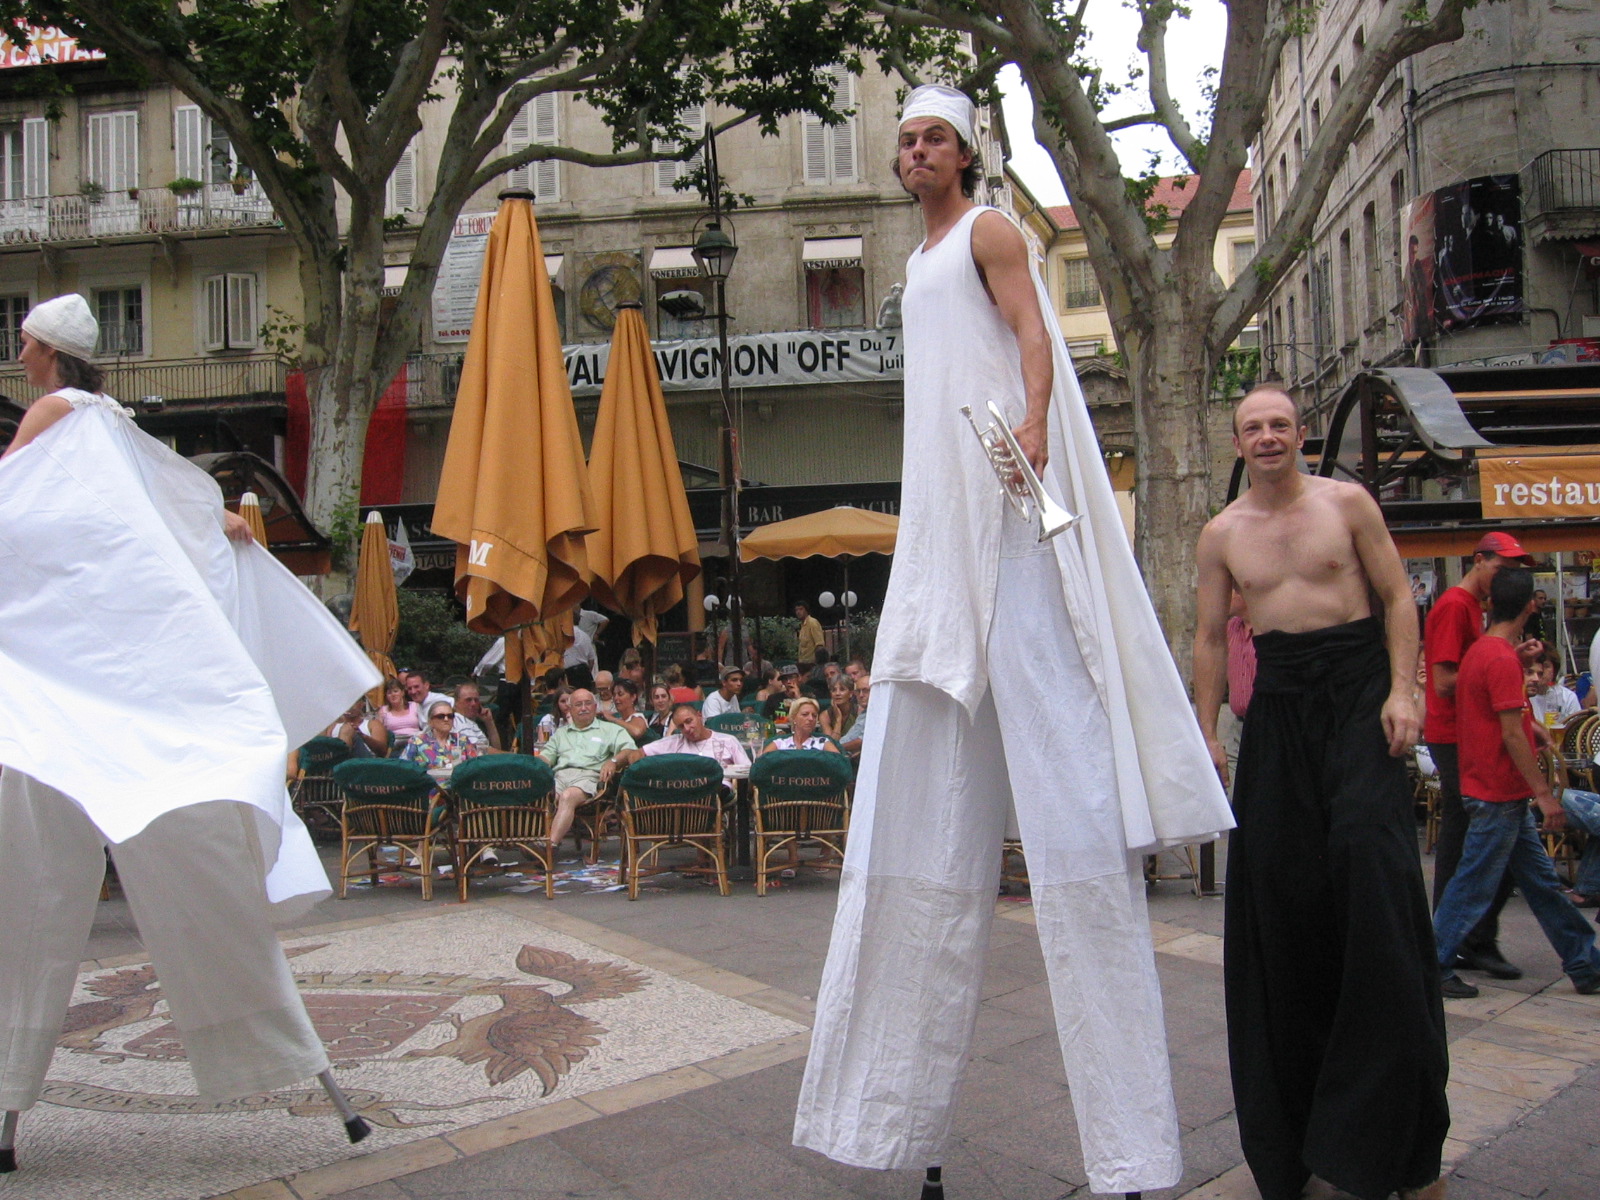 Street performers